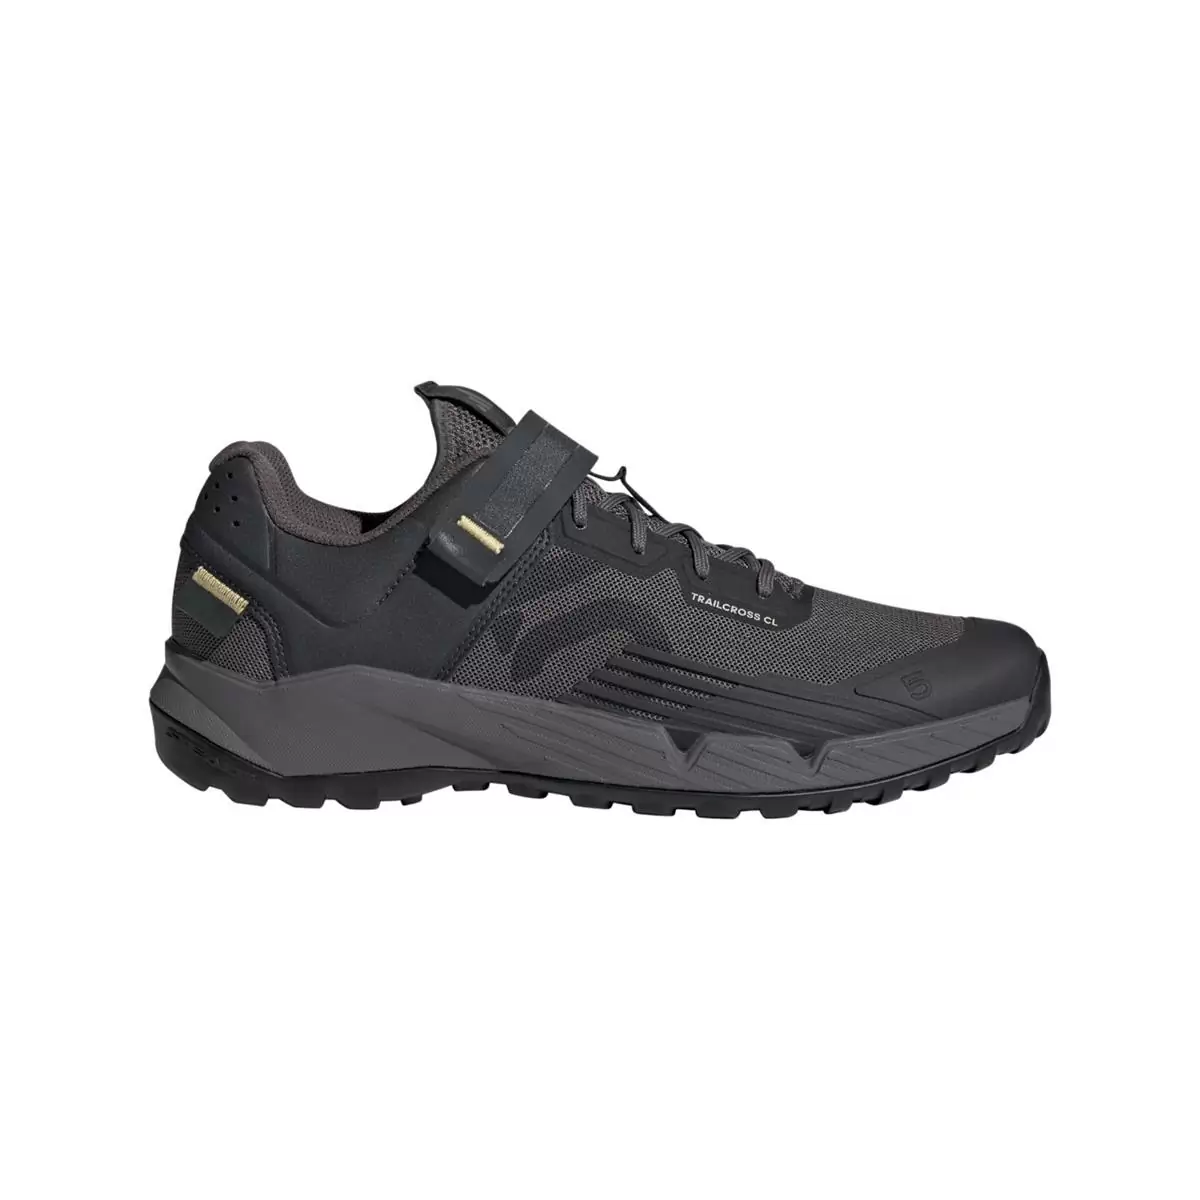 Clip 5.10 Trailcross MTB-Schuhe, Schwarz/Grau/Beige, Größe 38,5 - image